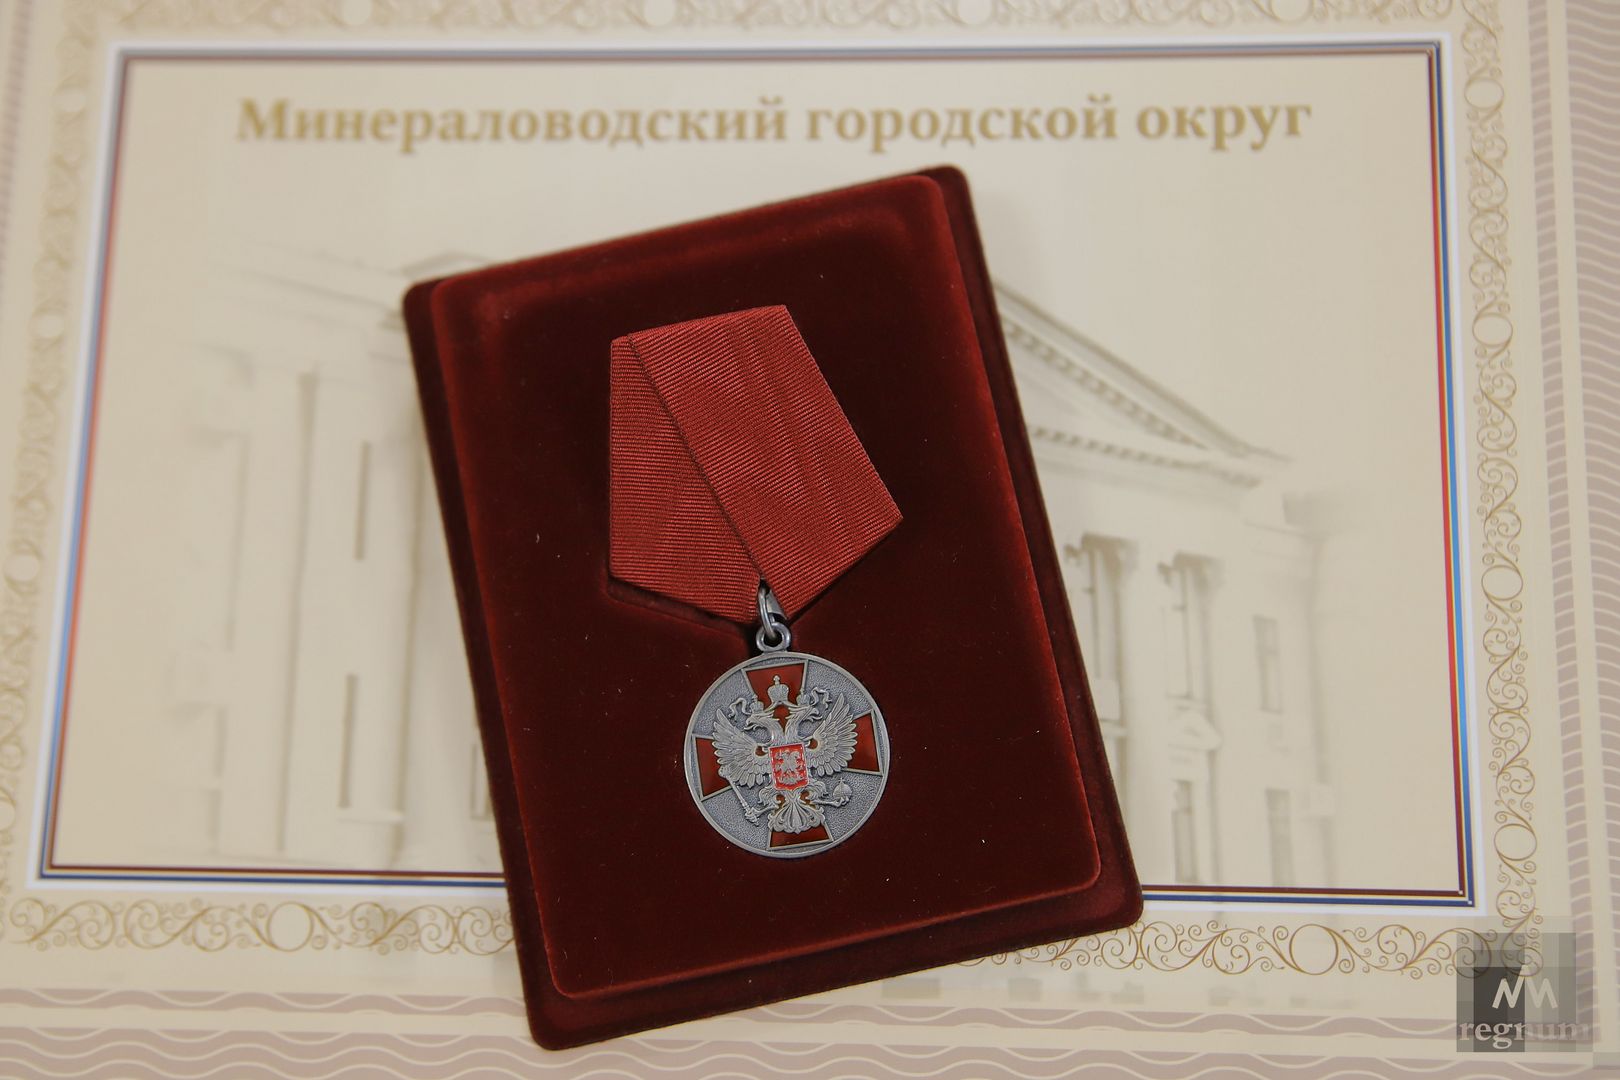 Орден «За заслуги перед Отечеством» II степени за мужество, отвагу и самоотверженность, проявленные при исполнении гражданского долга